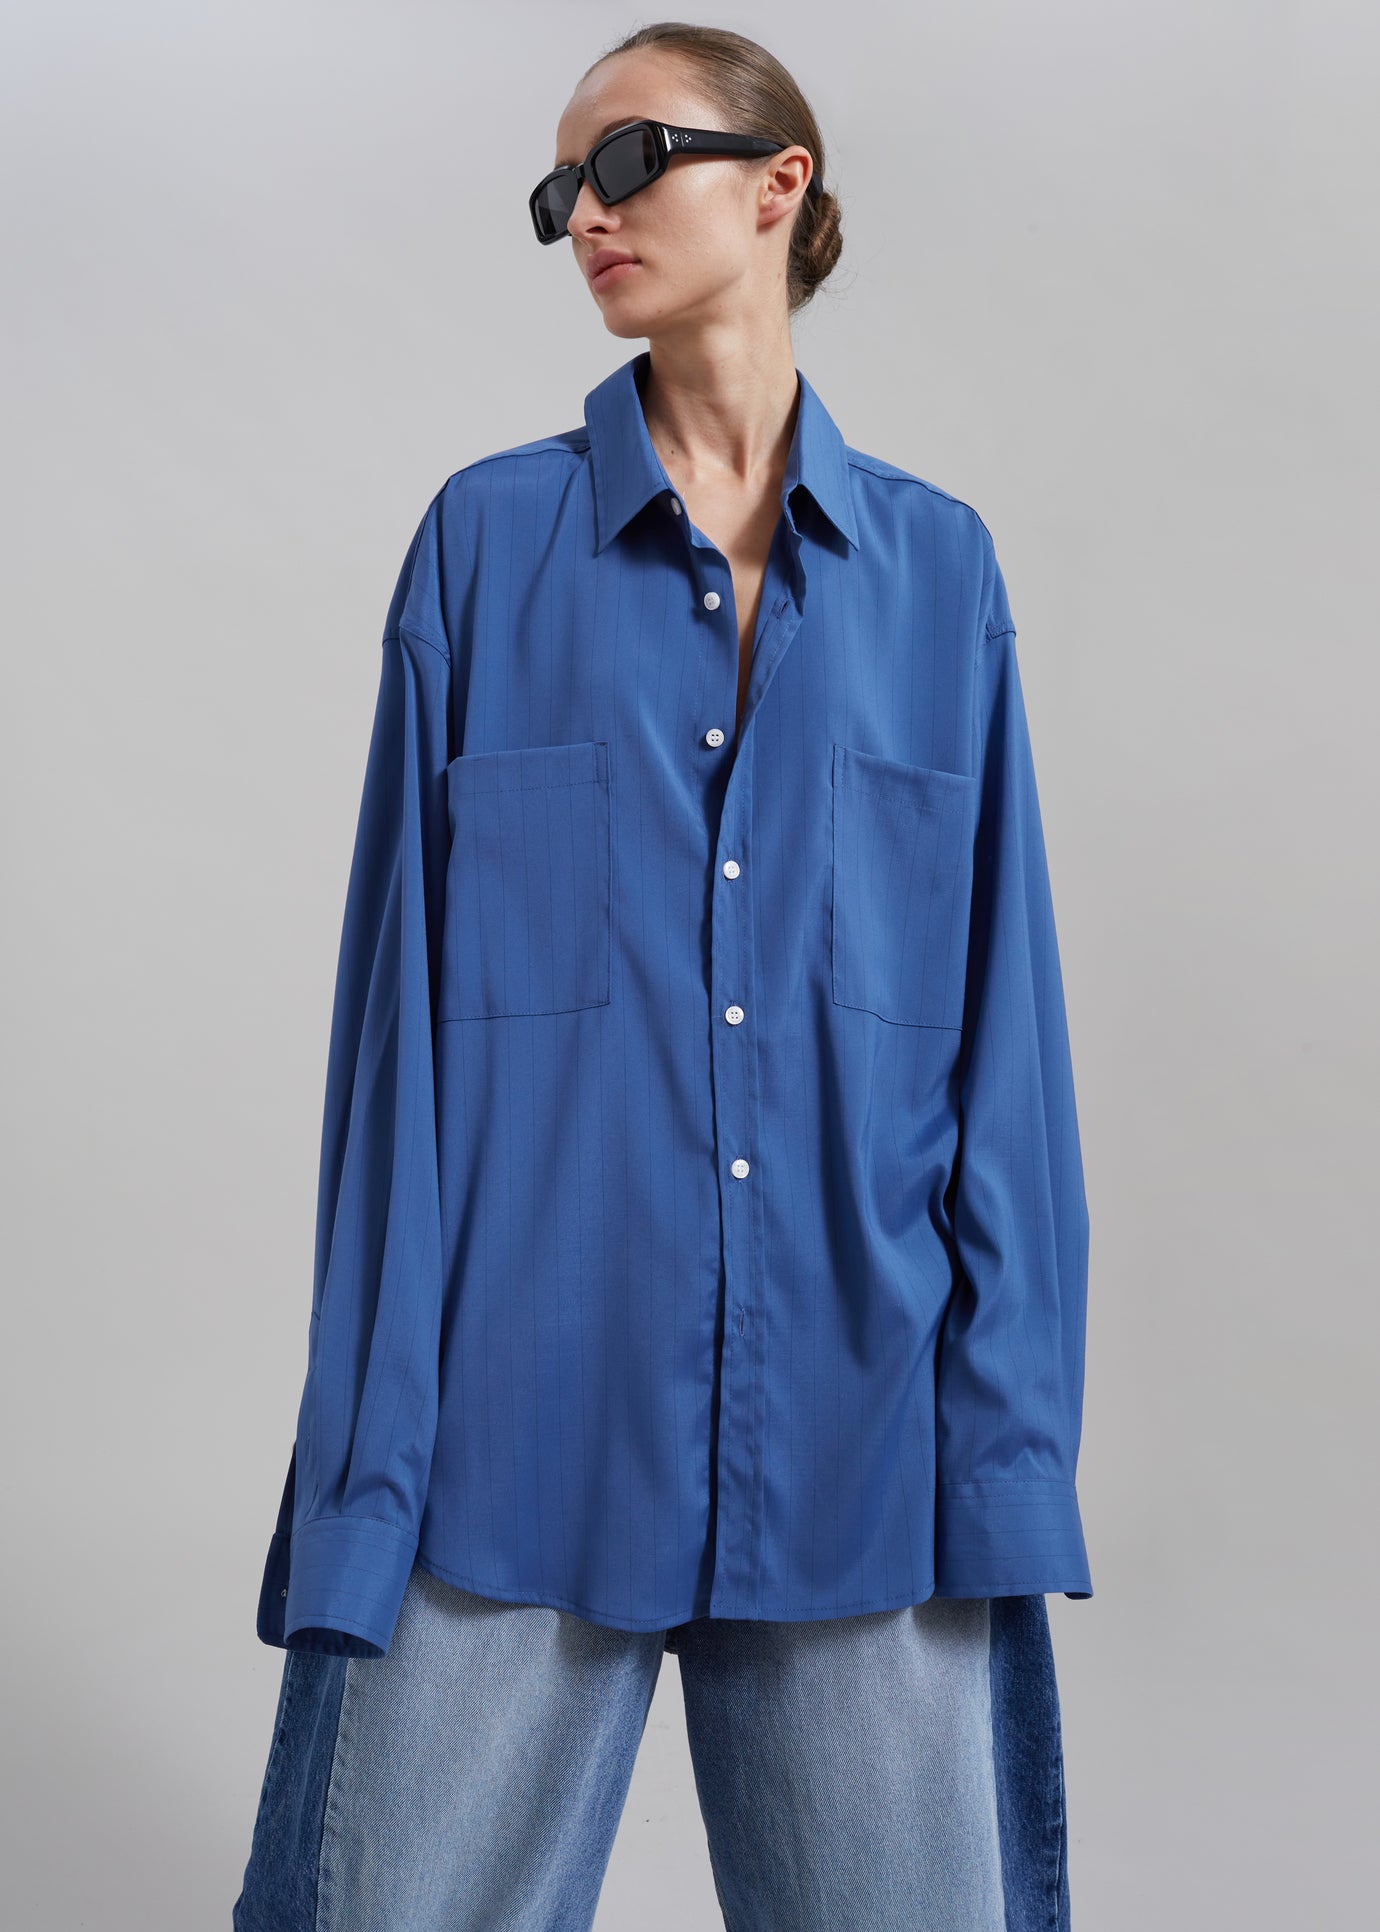 Elowen Button Up Shirt - Blue Stripe - 1